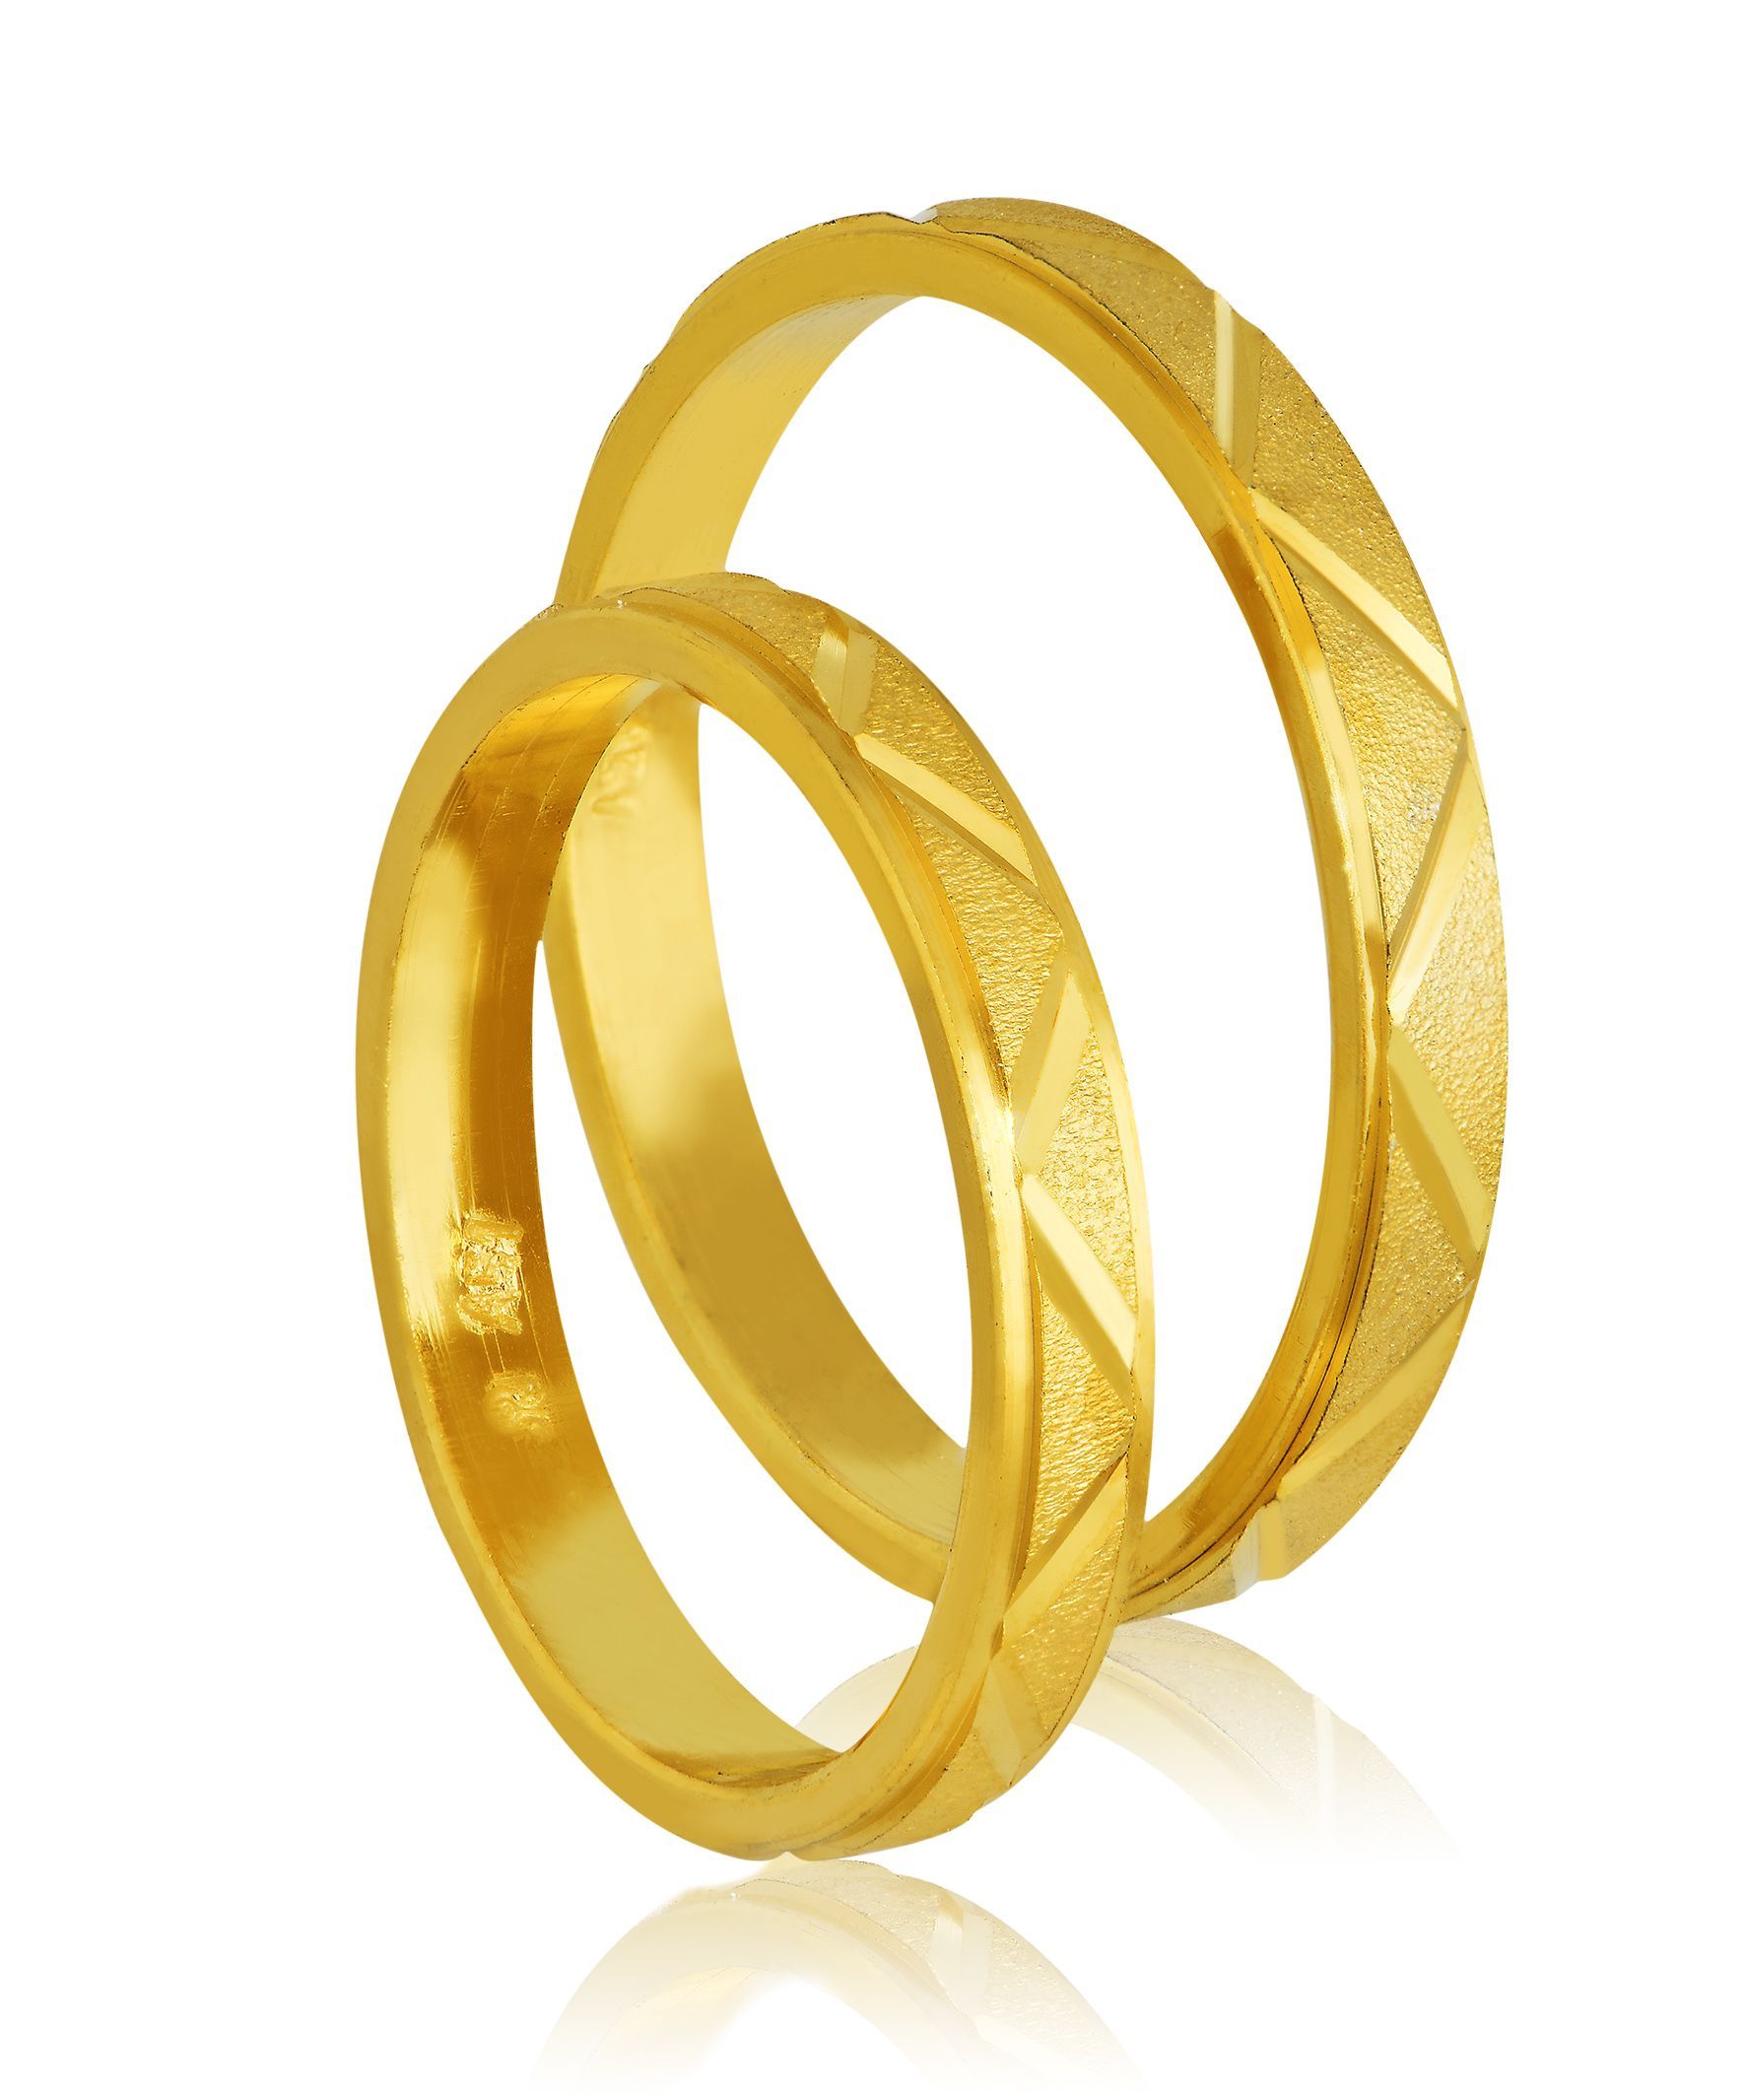 Golden wedding rings 3mm (code 405)